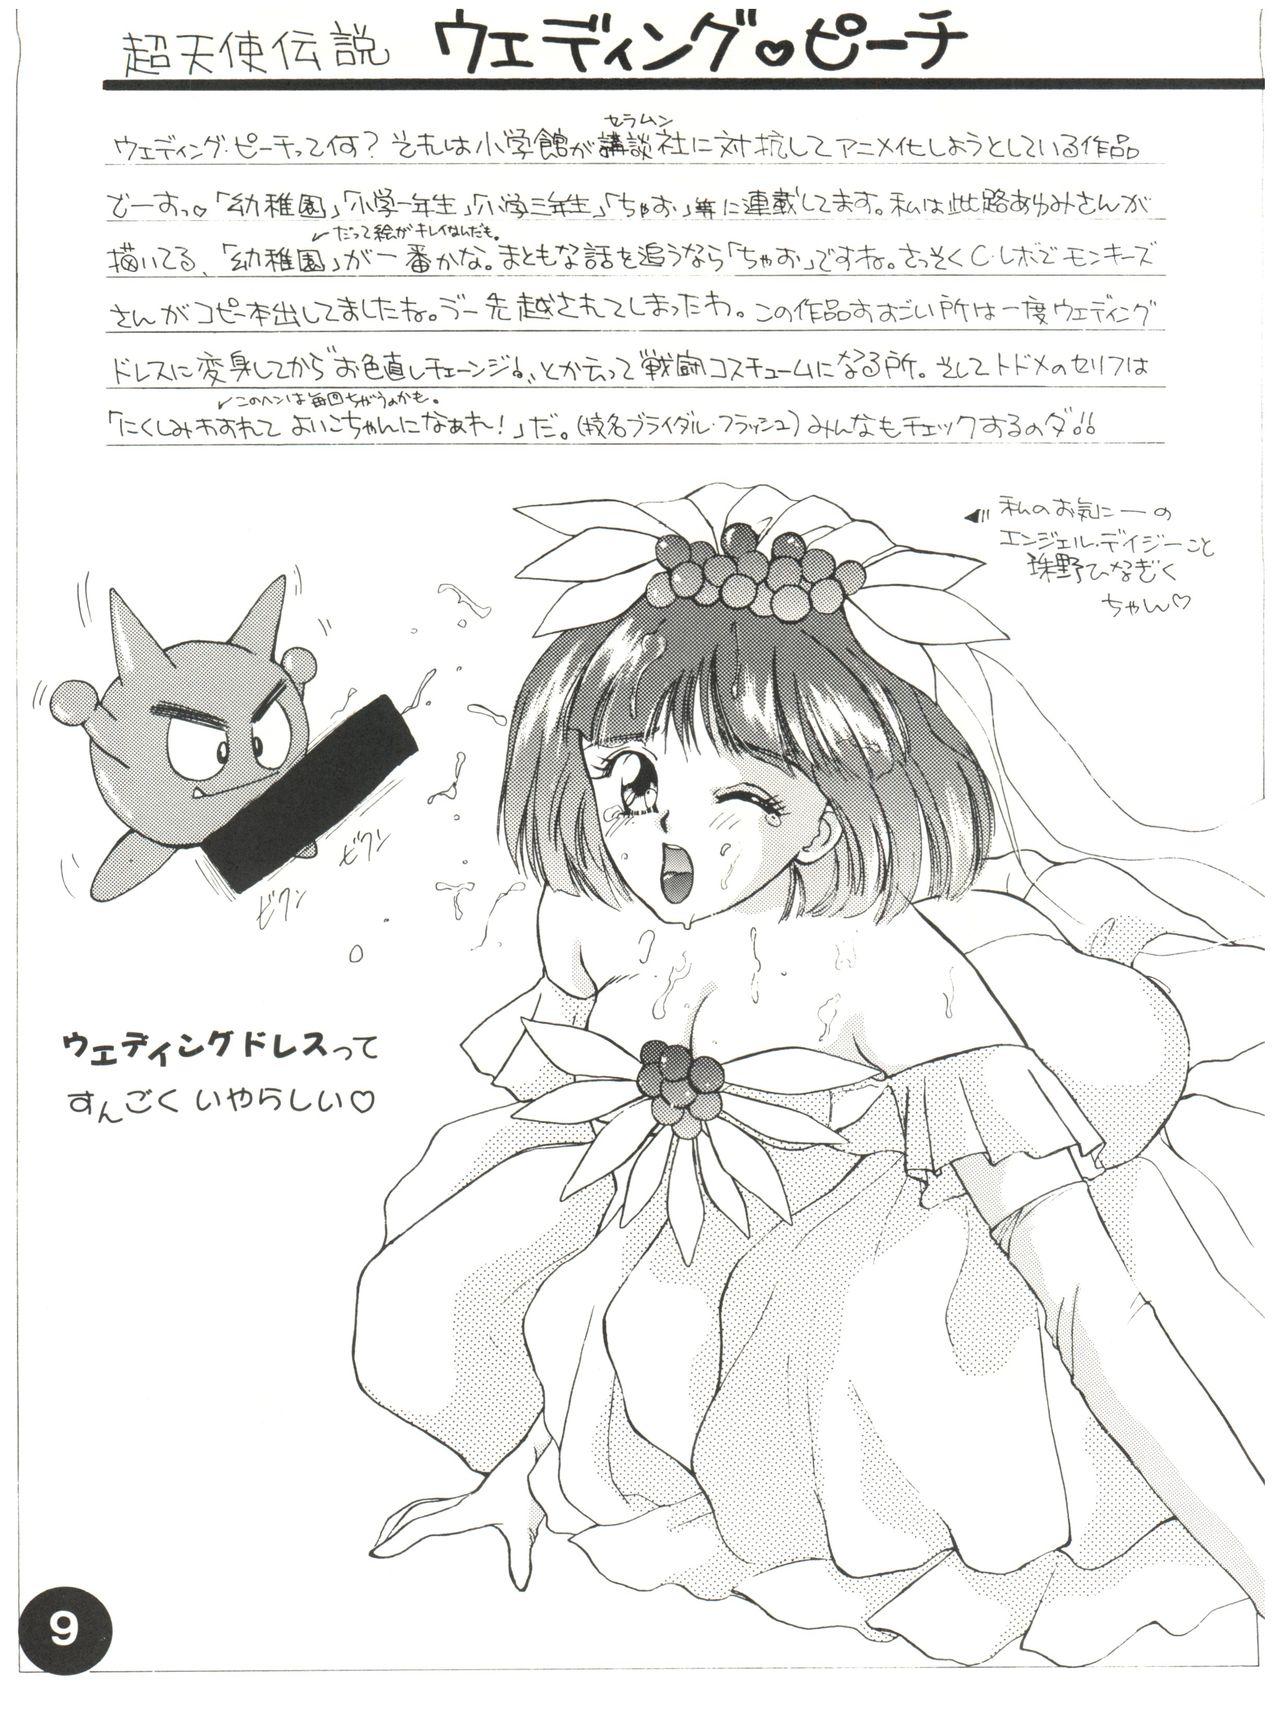 Style Otomenoinori Heavy Kyuu - Wedding peach Marmalade boy Chou kuse ni narisou Stockings - Page 9